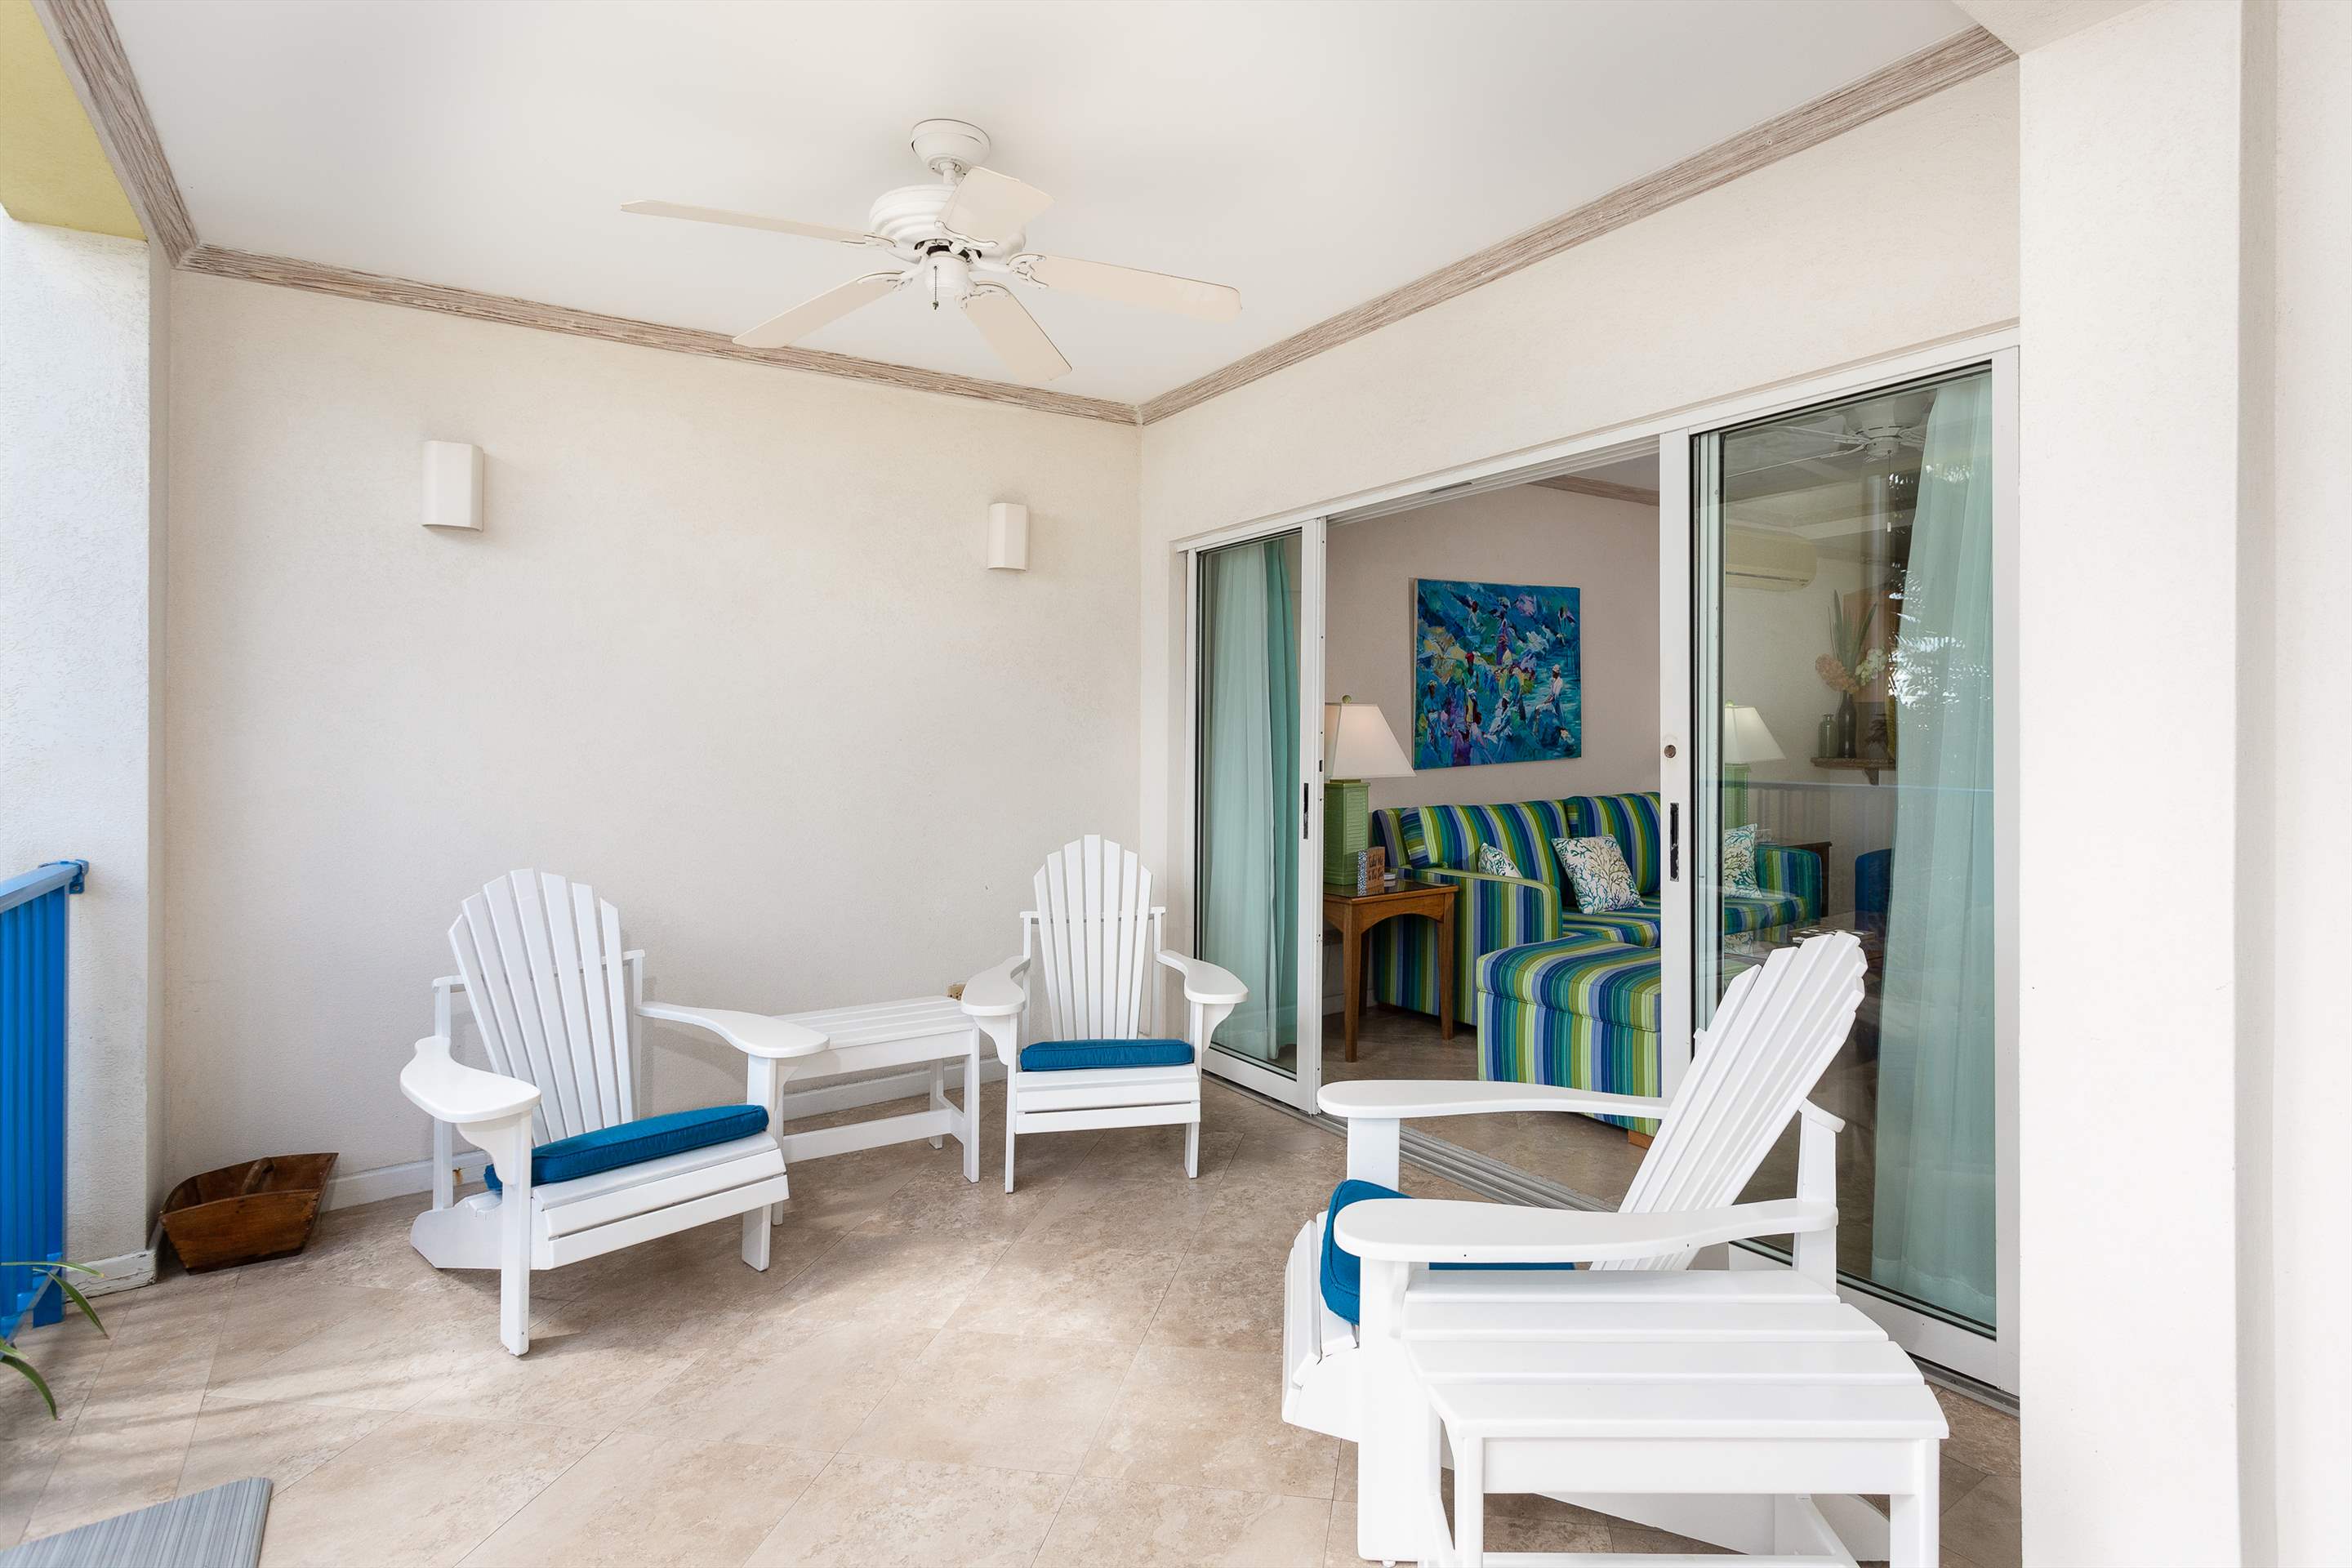 Maxwell Beach Villas 102, 2 Bedroom, 2 bedroom apartment in St. Lawrence Gap & South Coast, Barbados Photo #4